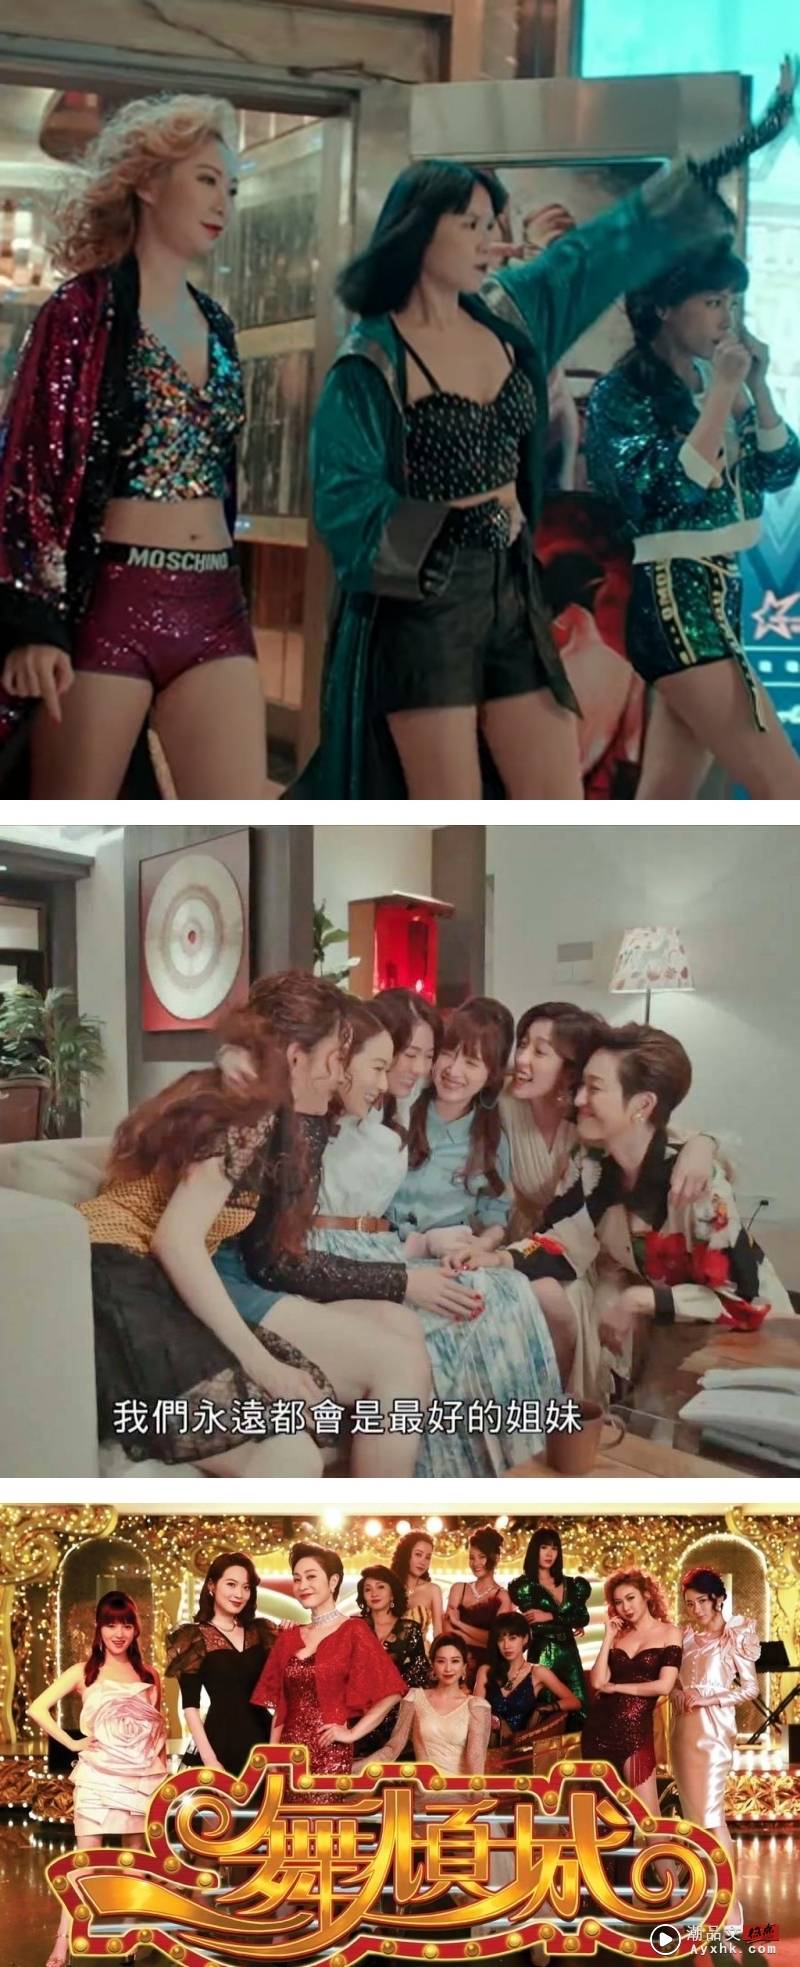 TVB版《华灯初上》5月开播！美女云集 预告片出现性虐床戏 娱乐资讯 图3张